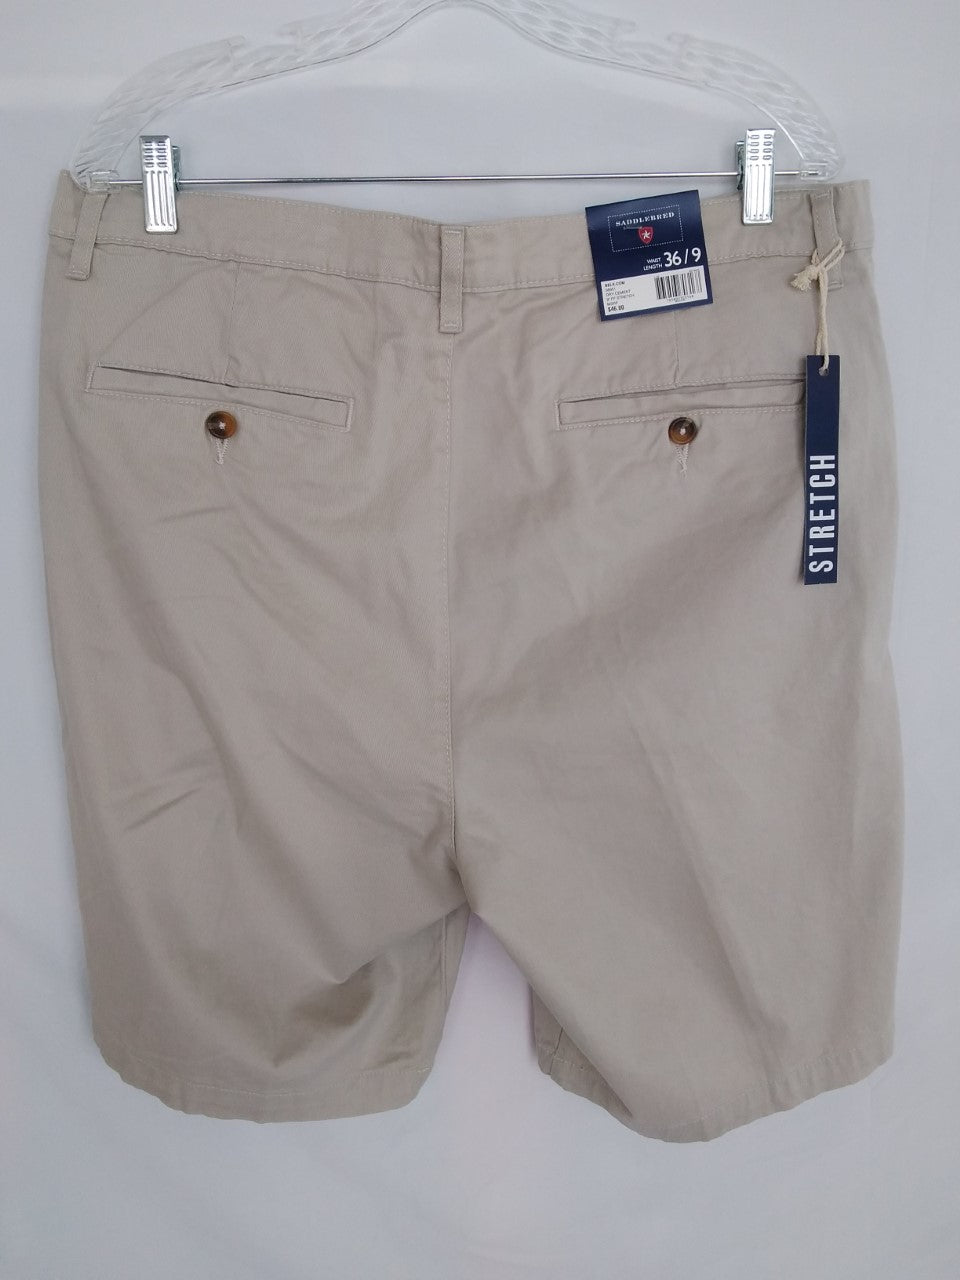 Saddlebred Men's Shorts - Size 36